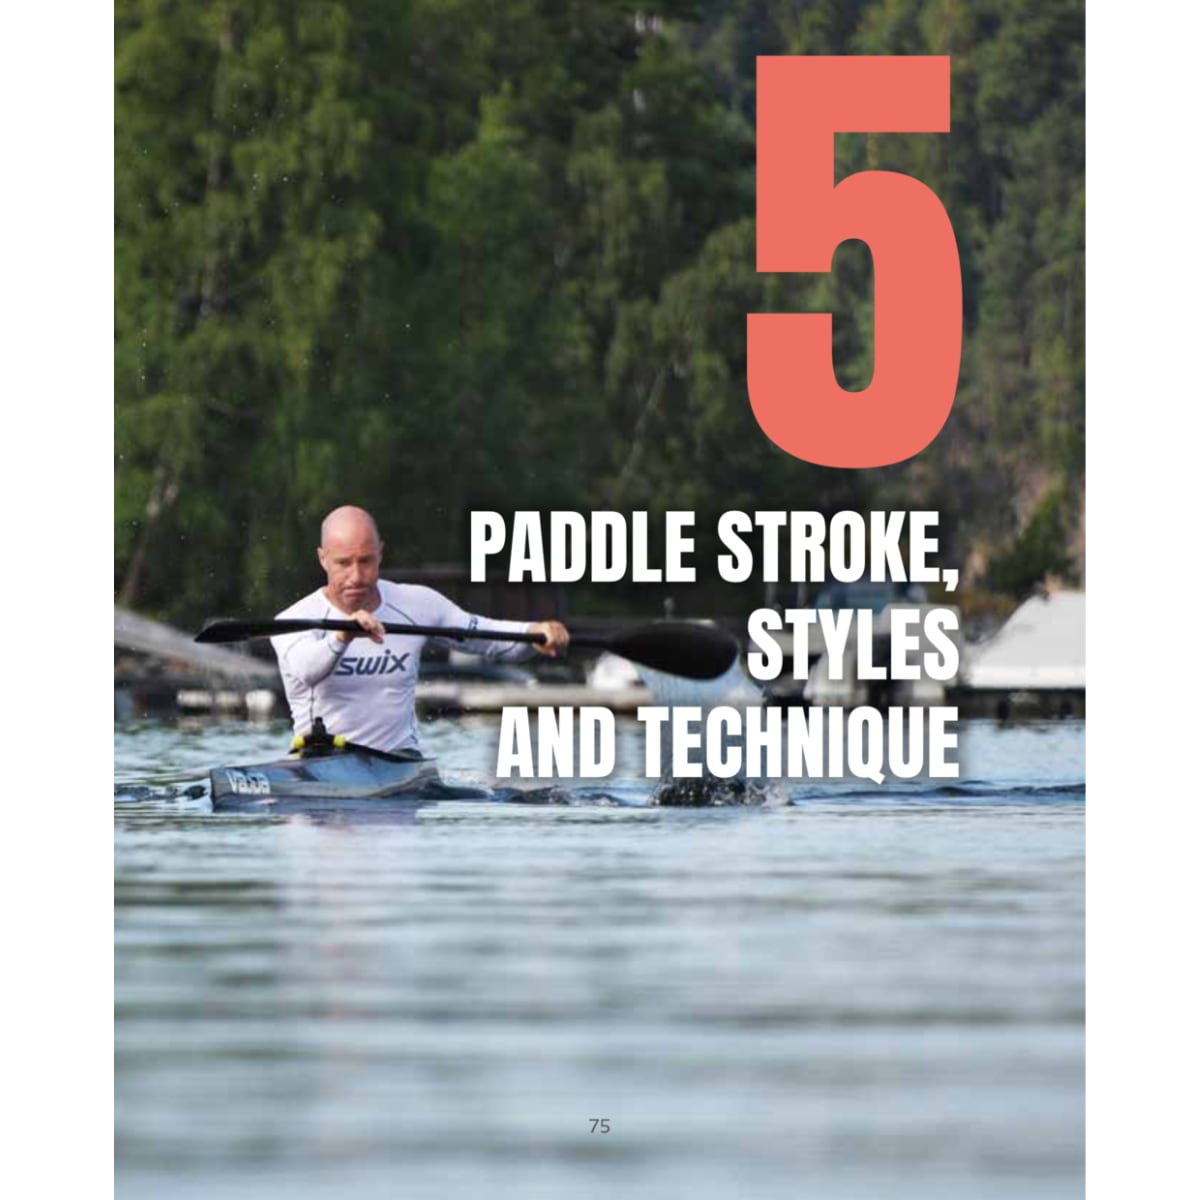 kayak racing book pictures